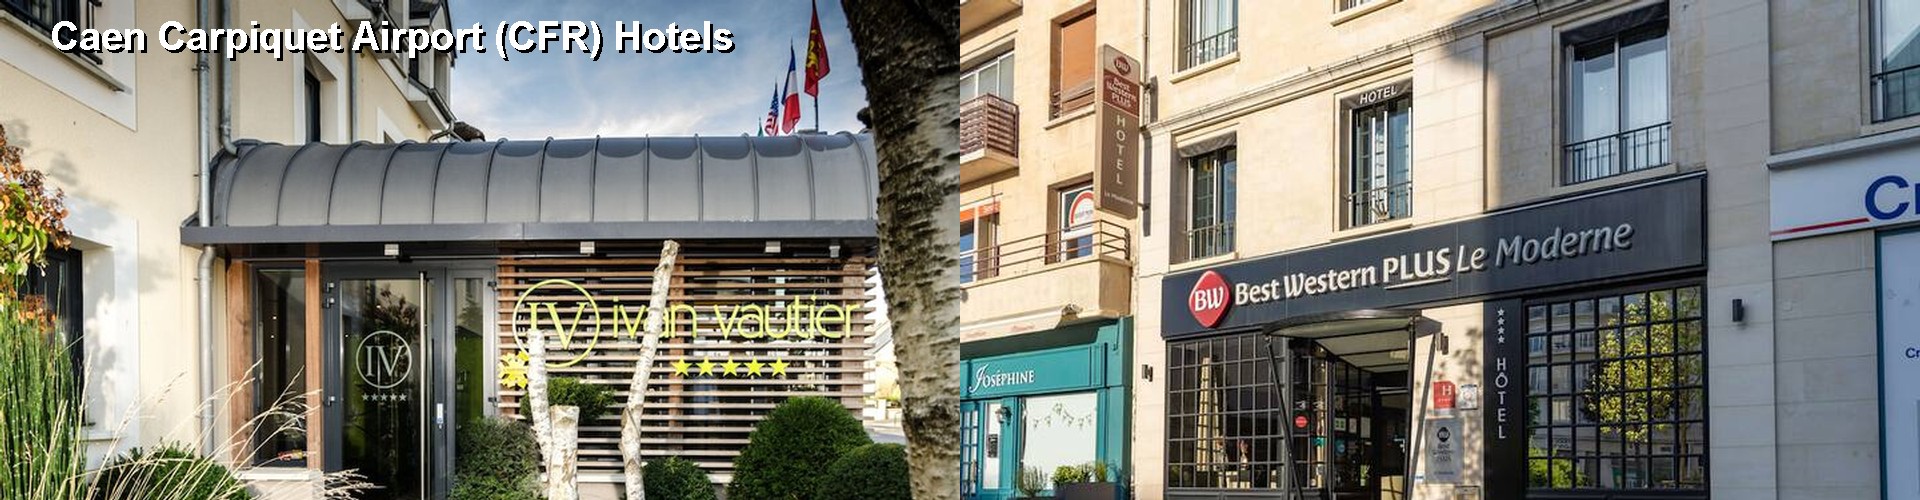 5 Best Hotels near Caen Carpiquet Airport (CFR)